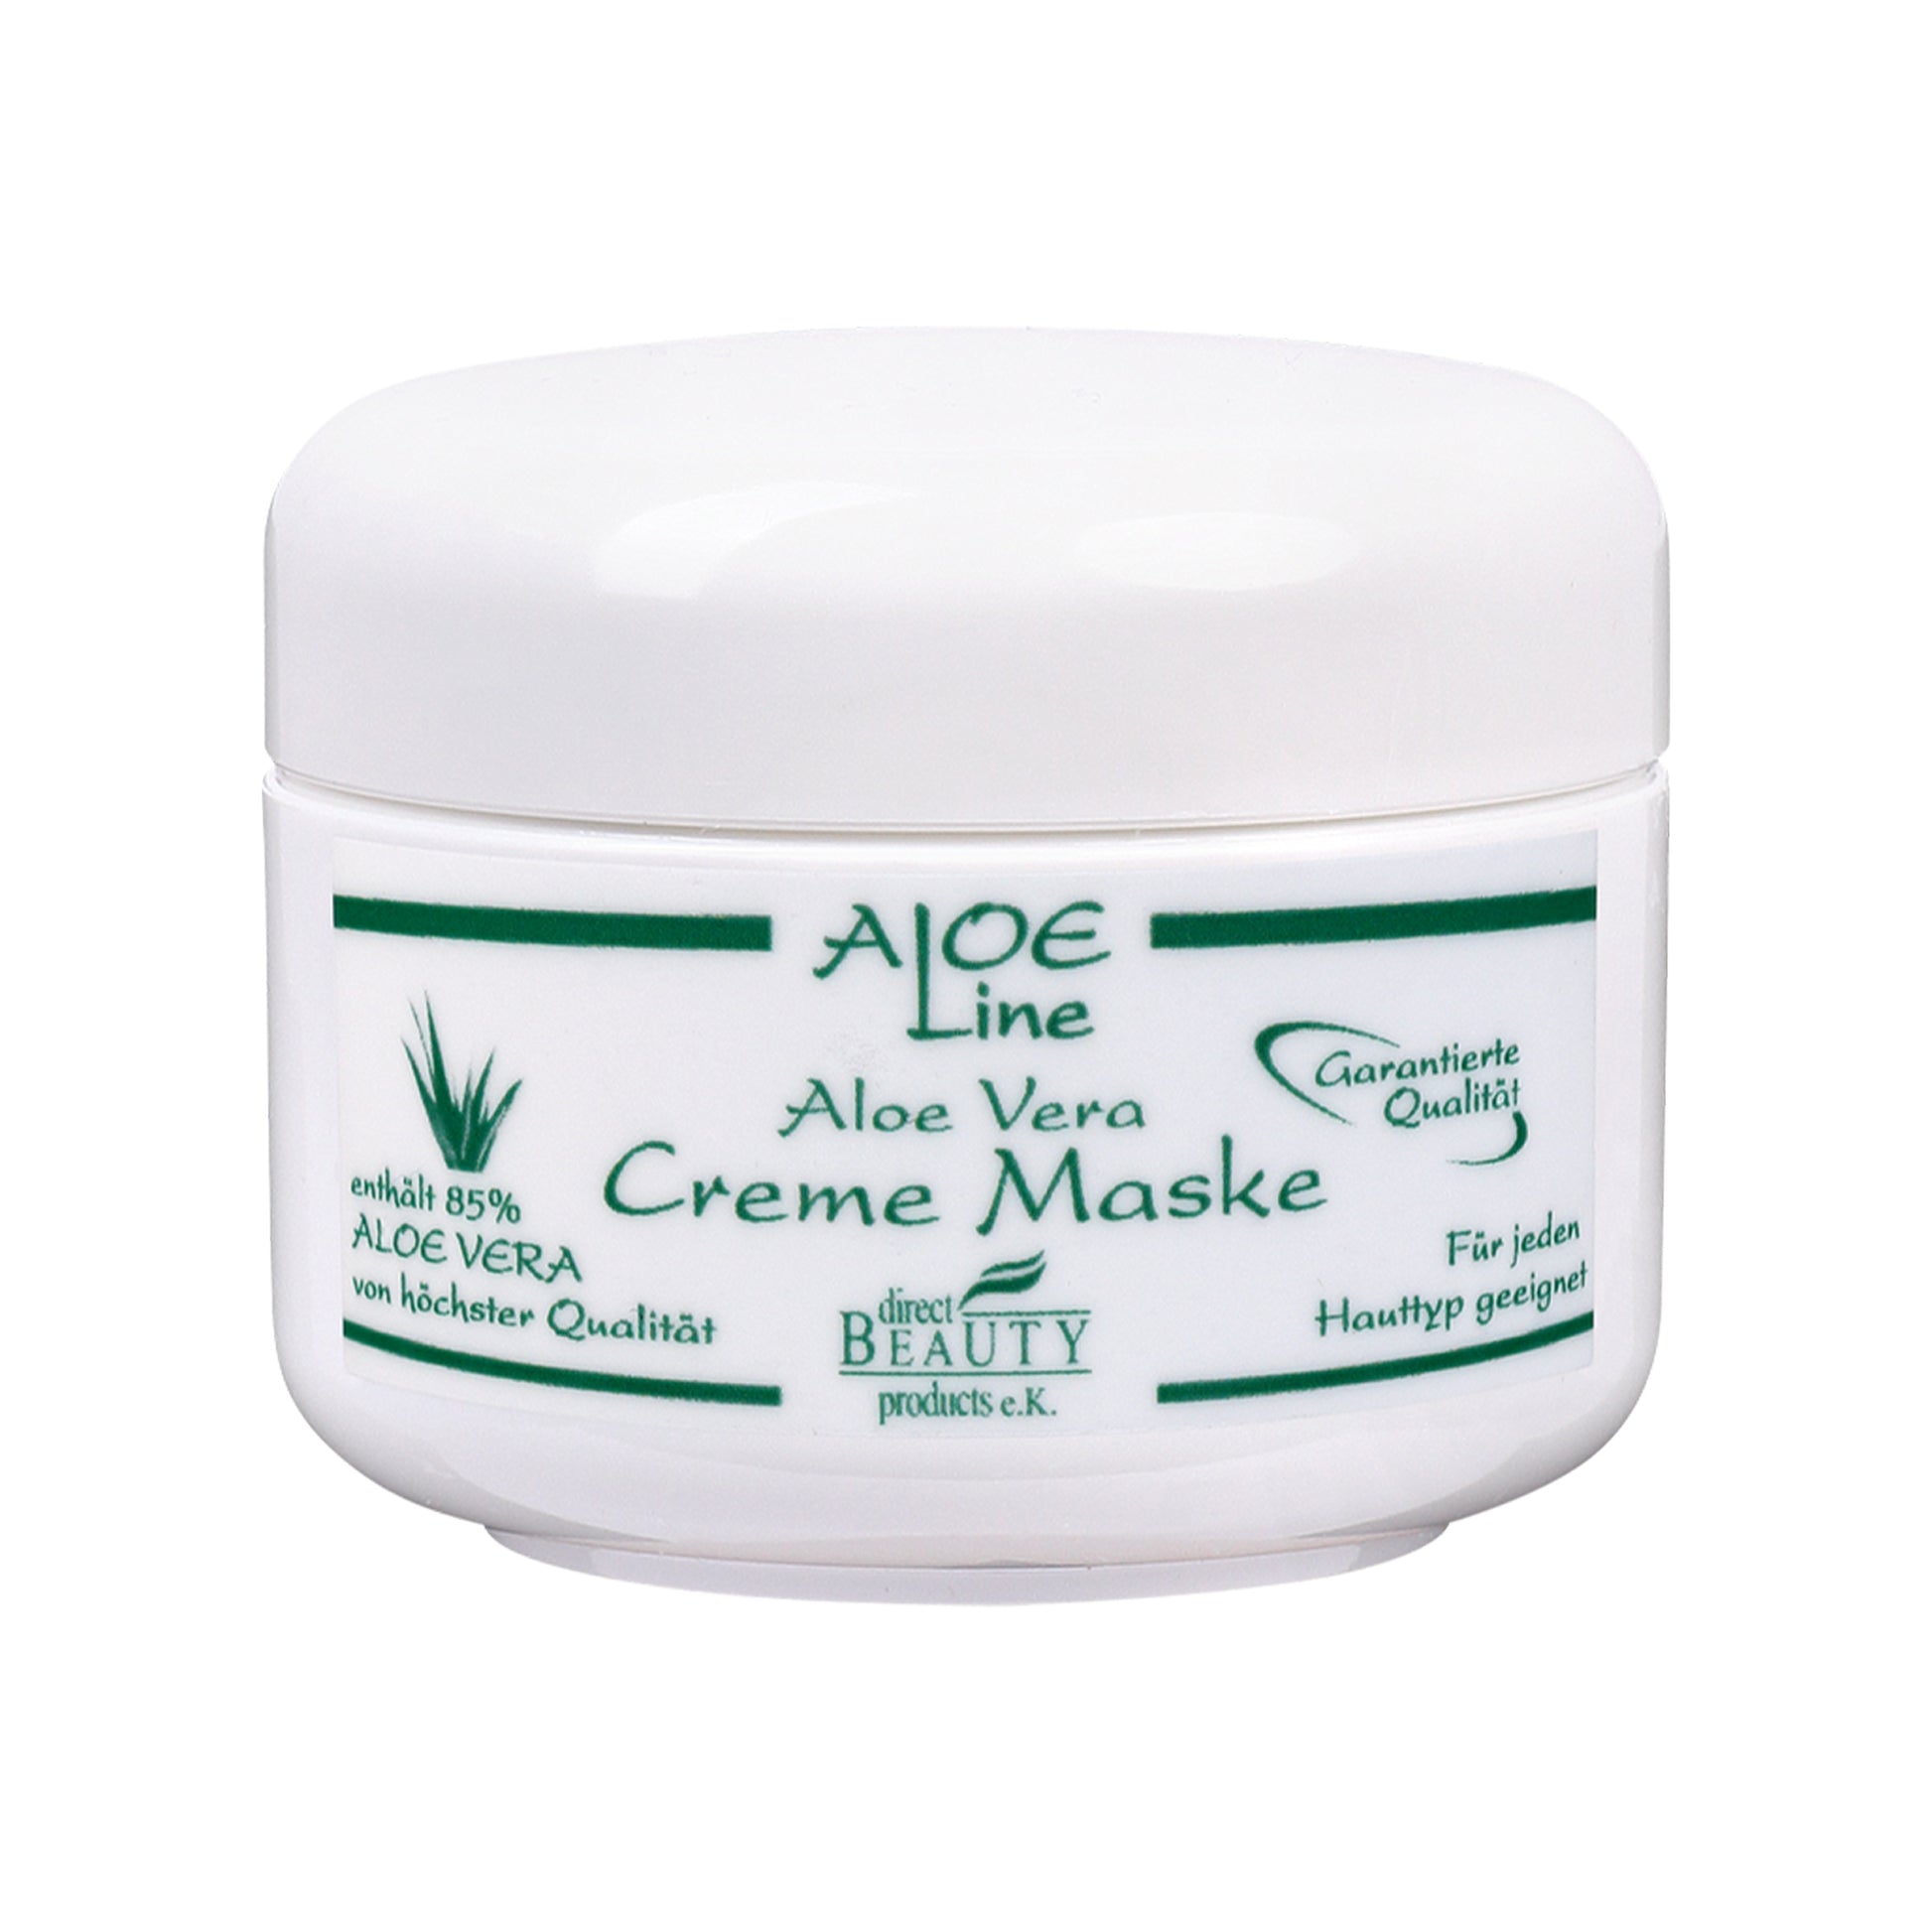 Aloe Vera Creme Maske 50ml - ALOE Line